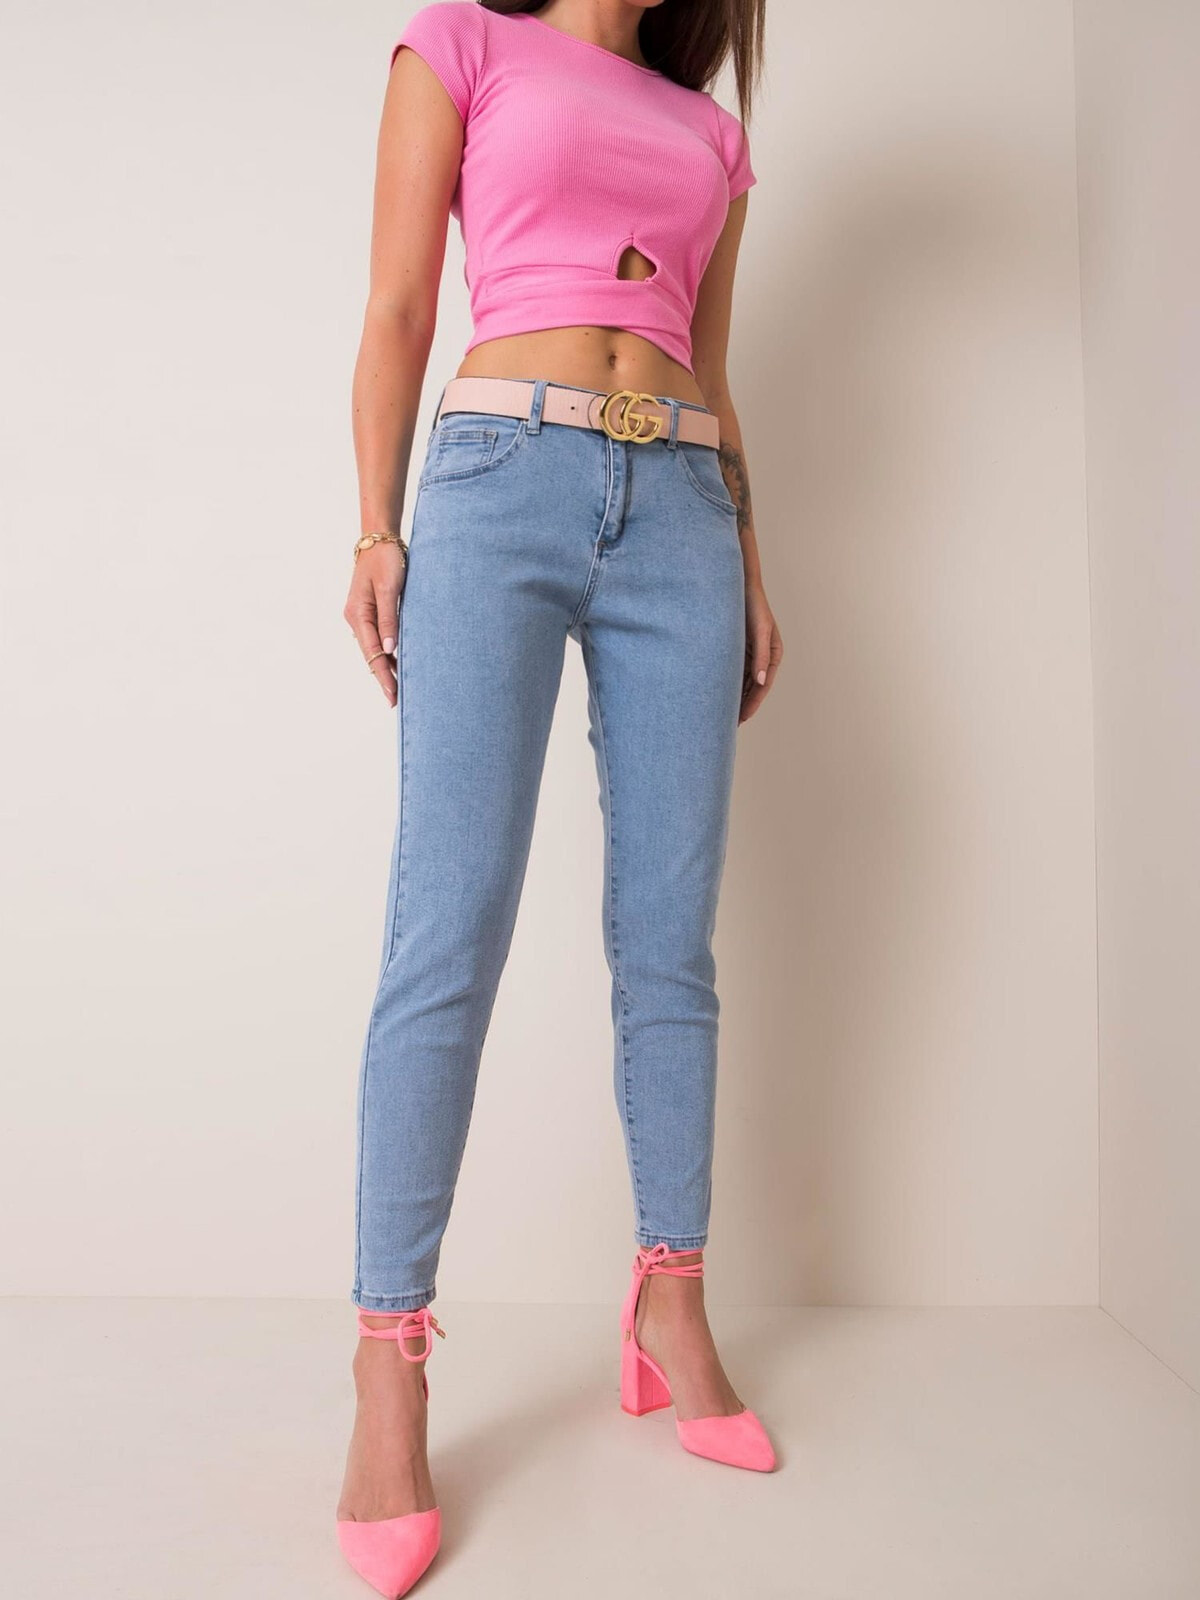 Женские джинсы скинни со средней посадкой   голубые  Factory Price